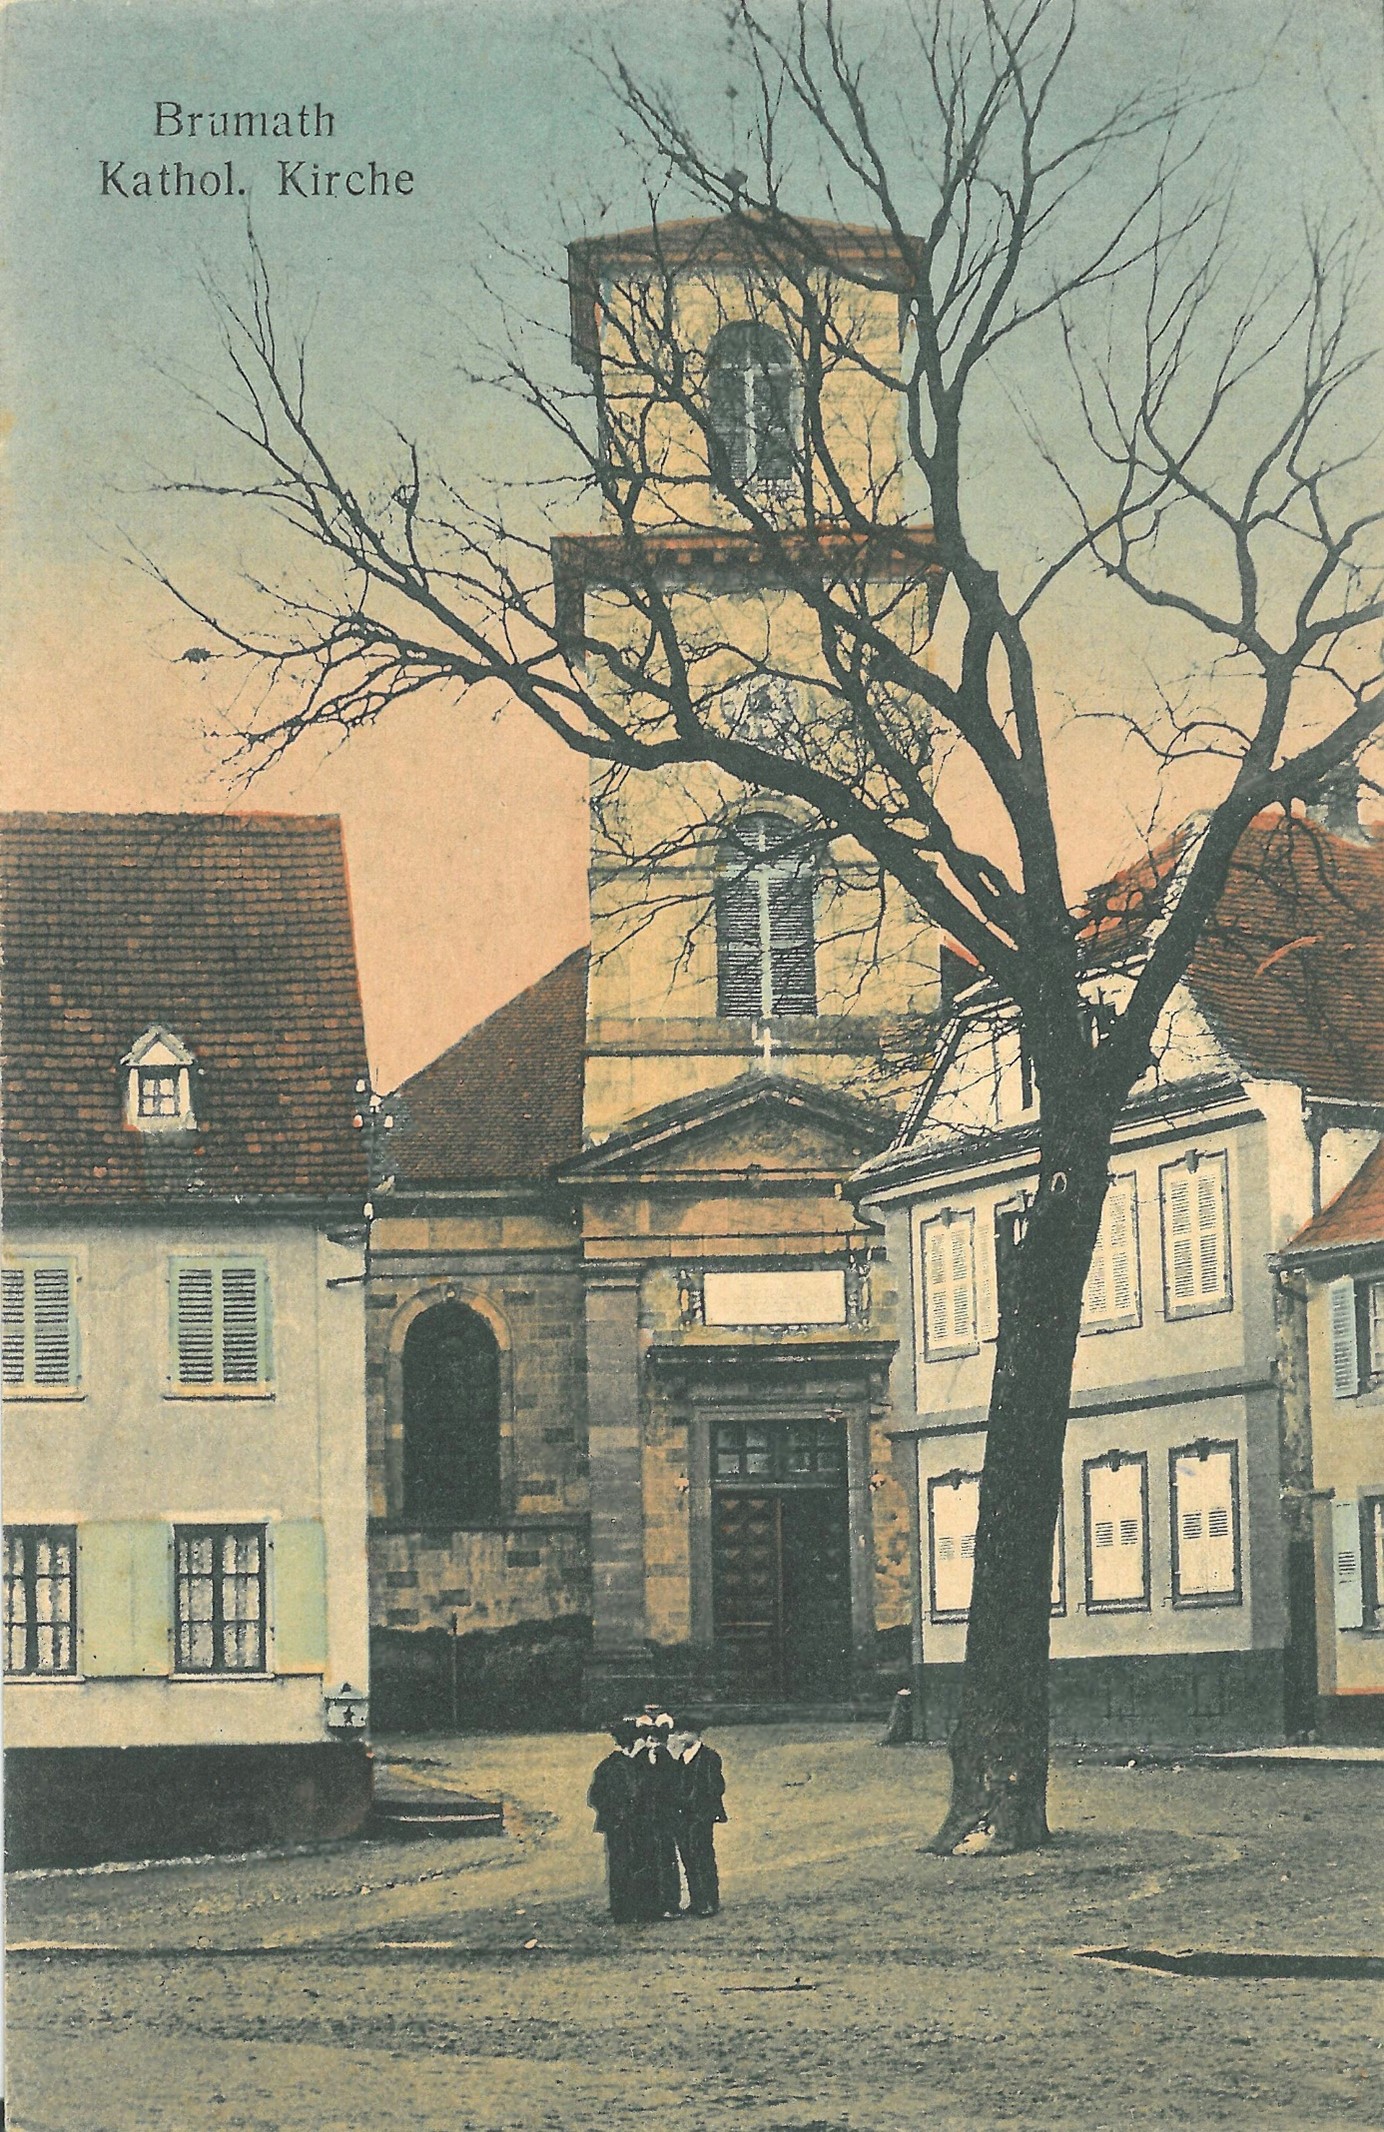 Image d'archive - Eglise catholique et Maison de Sel